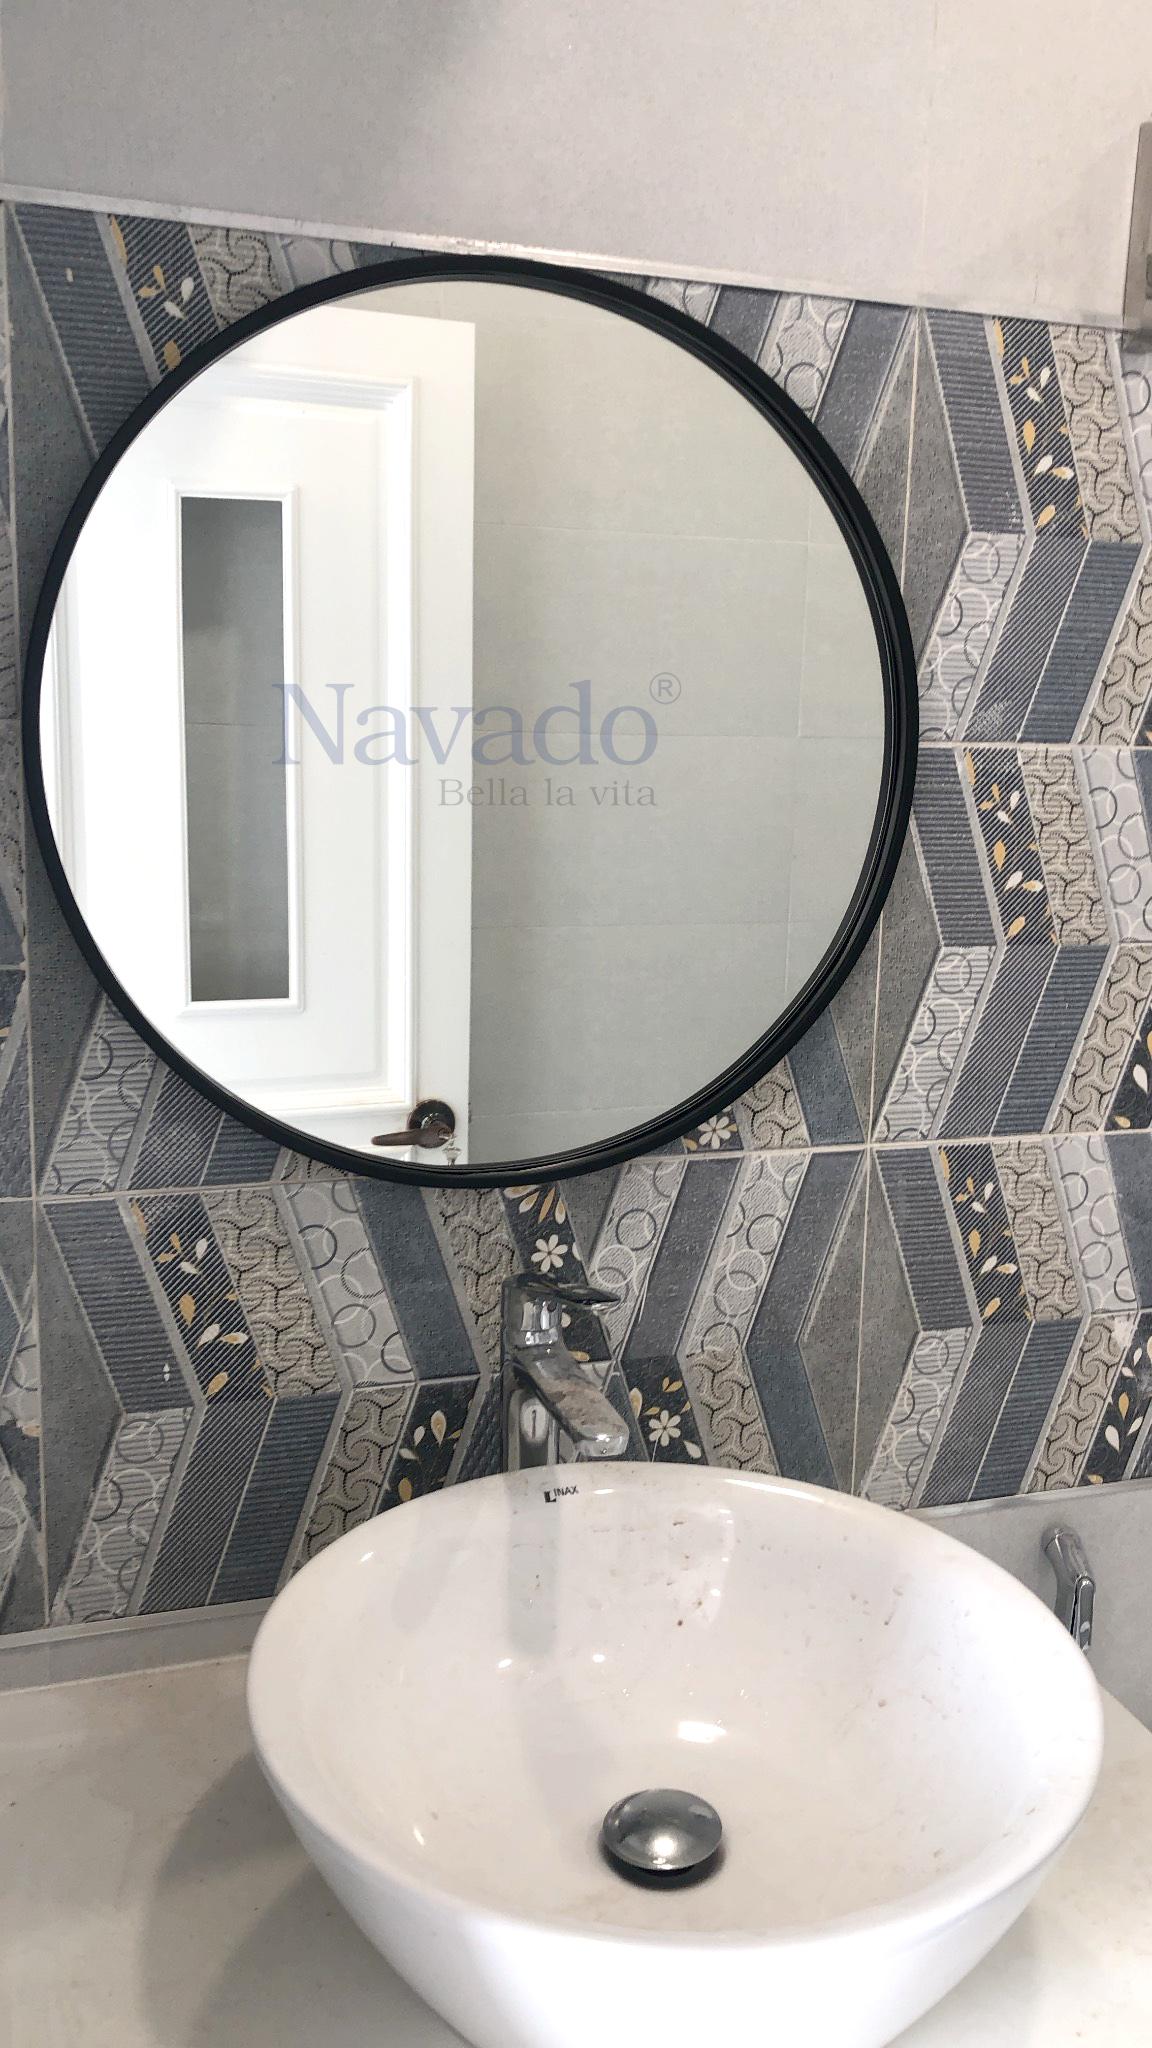 Nếu bạn đang tìm kiếm một gương nhà tắm độc đáo, vừa trang nhã và tiện lợi, gương tròn treo tường chính là lựa chọn hoàn hảo. Với thiết kế nhỏ gọn và thanh lịch, bạn có thể dễ dàng treo lên bất cứ vị trí nào trong phòng tắm.